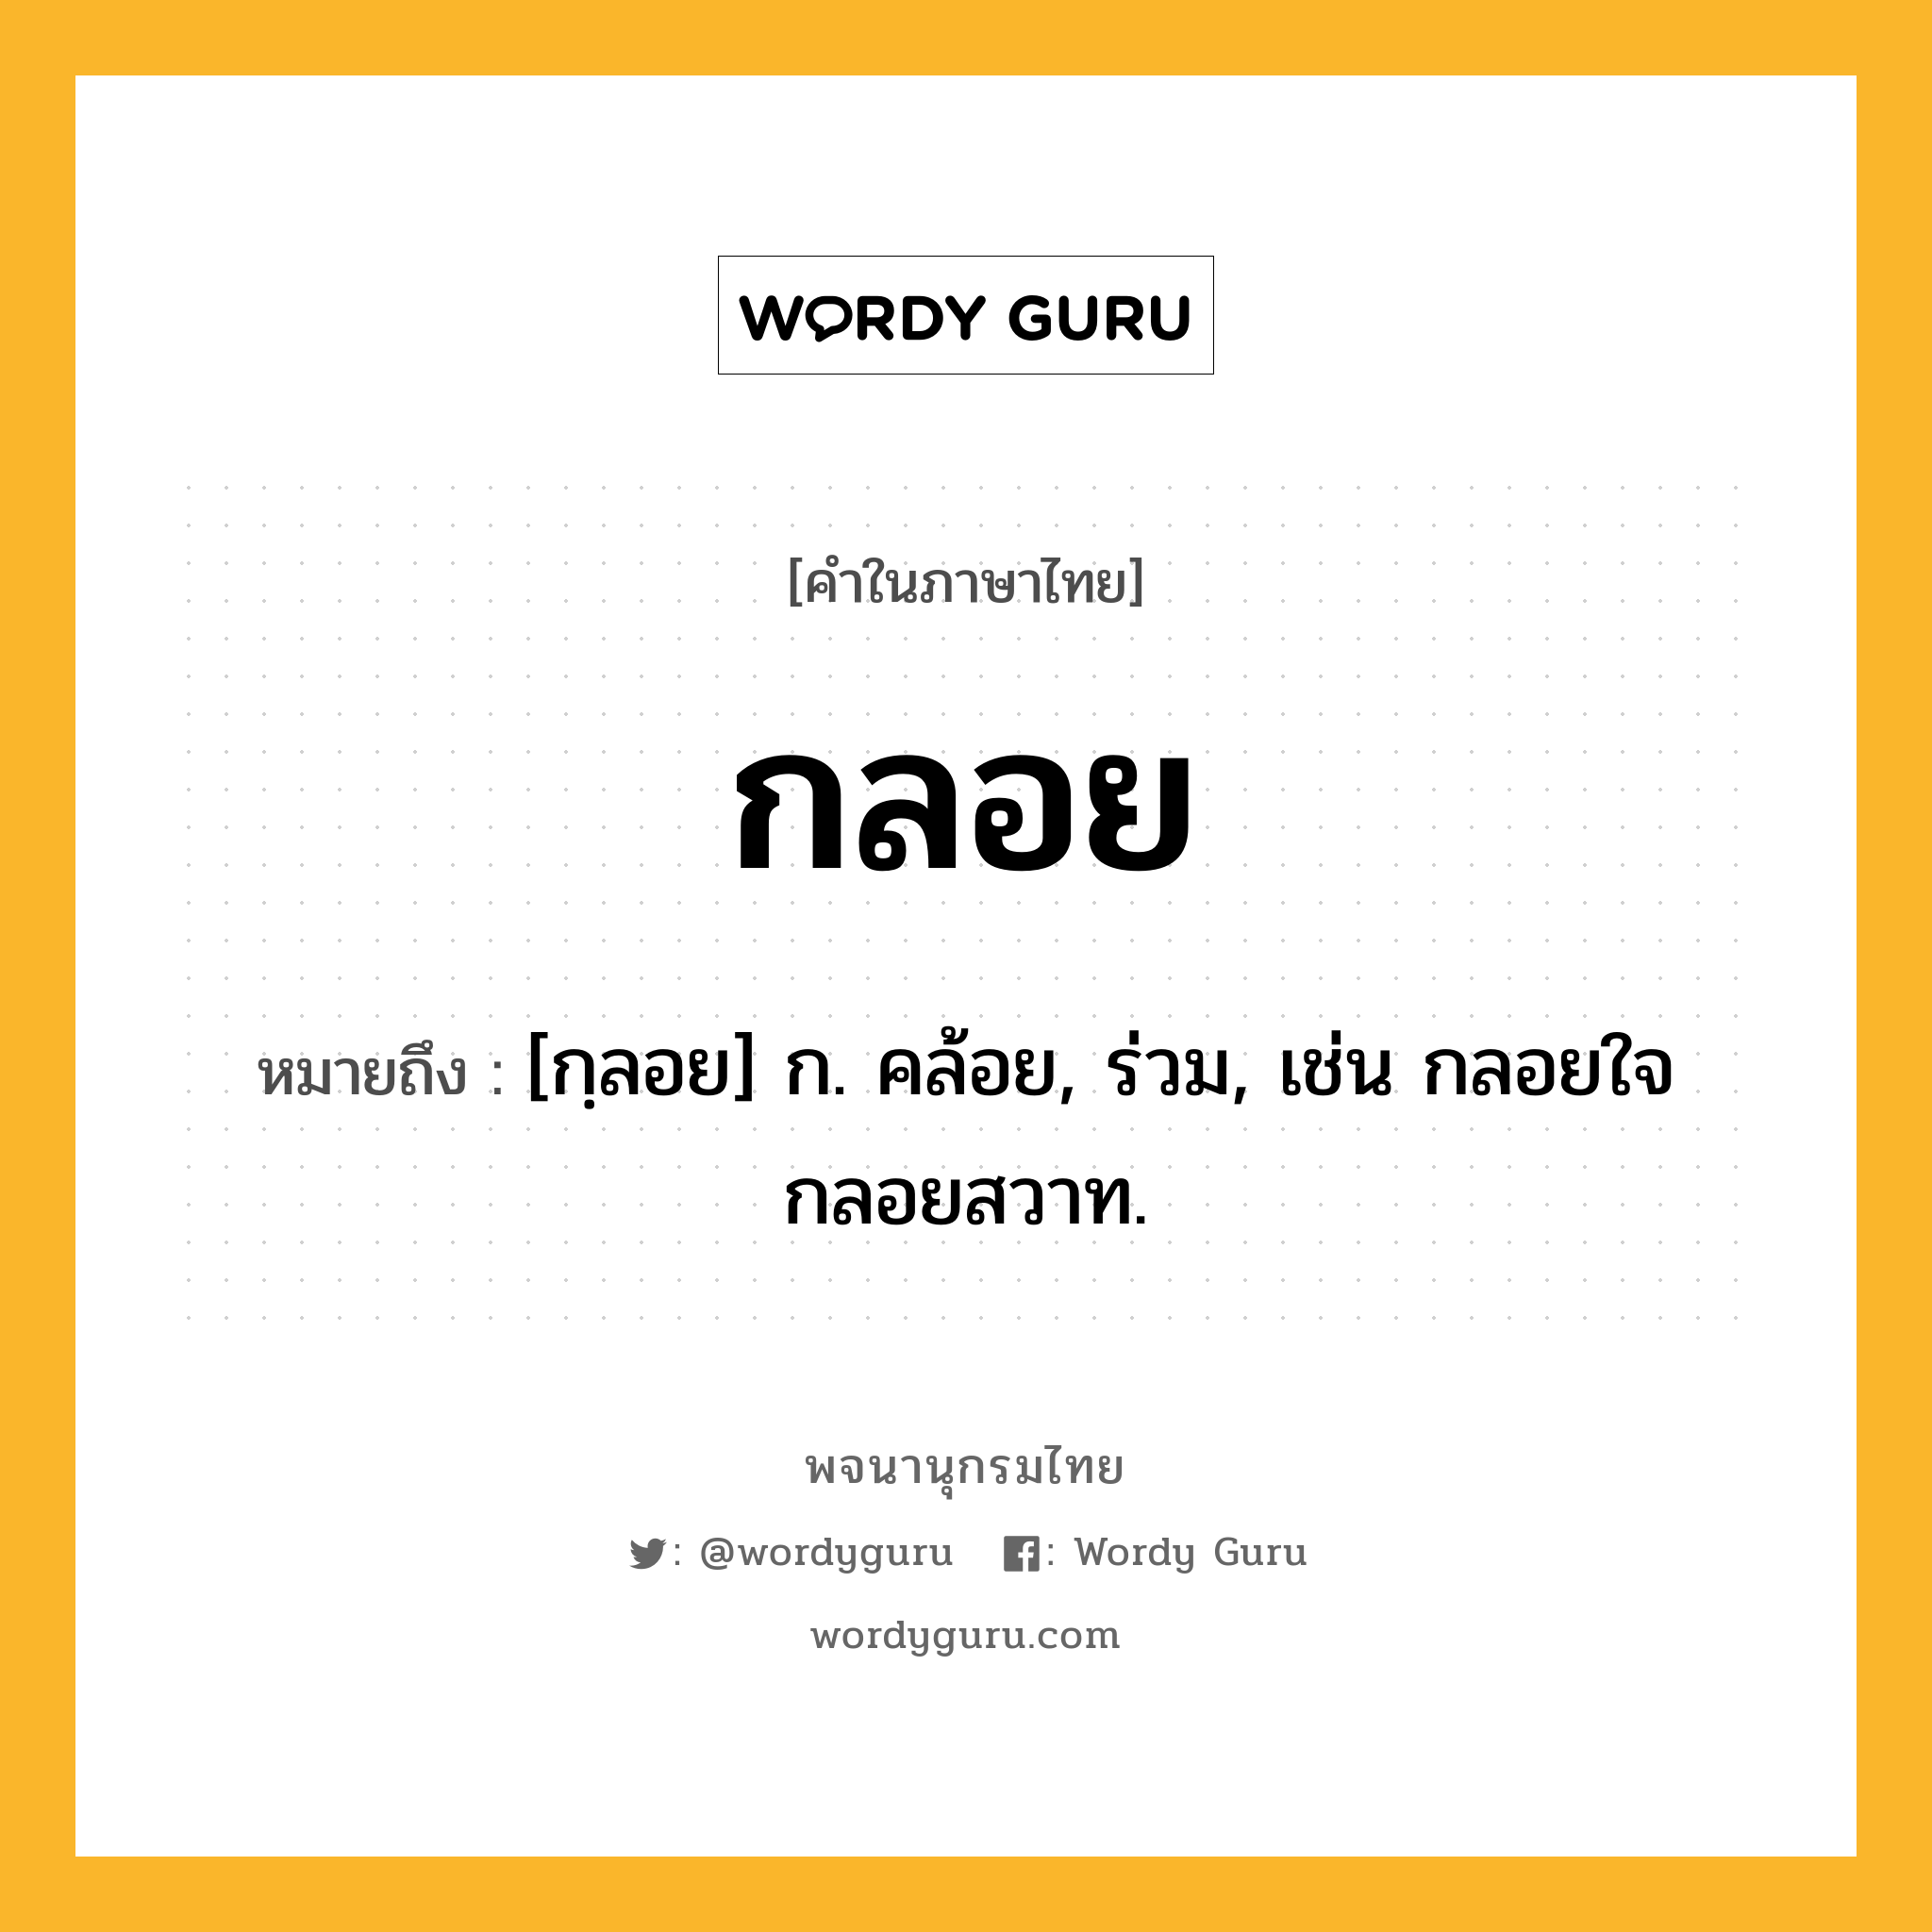 กลอย ความหมาย หมายถึงอะไร?, คำในภาษาไทย กลอย หมายถึง [กฺลอย] ก. คล้อย, ร่วม, เช่น กลอยใจ กลอยสวาท.